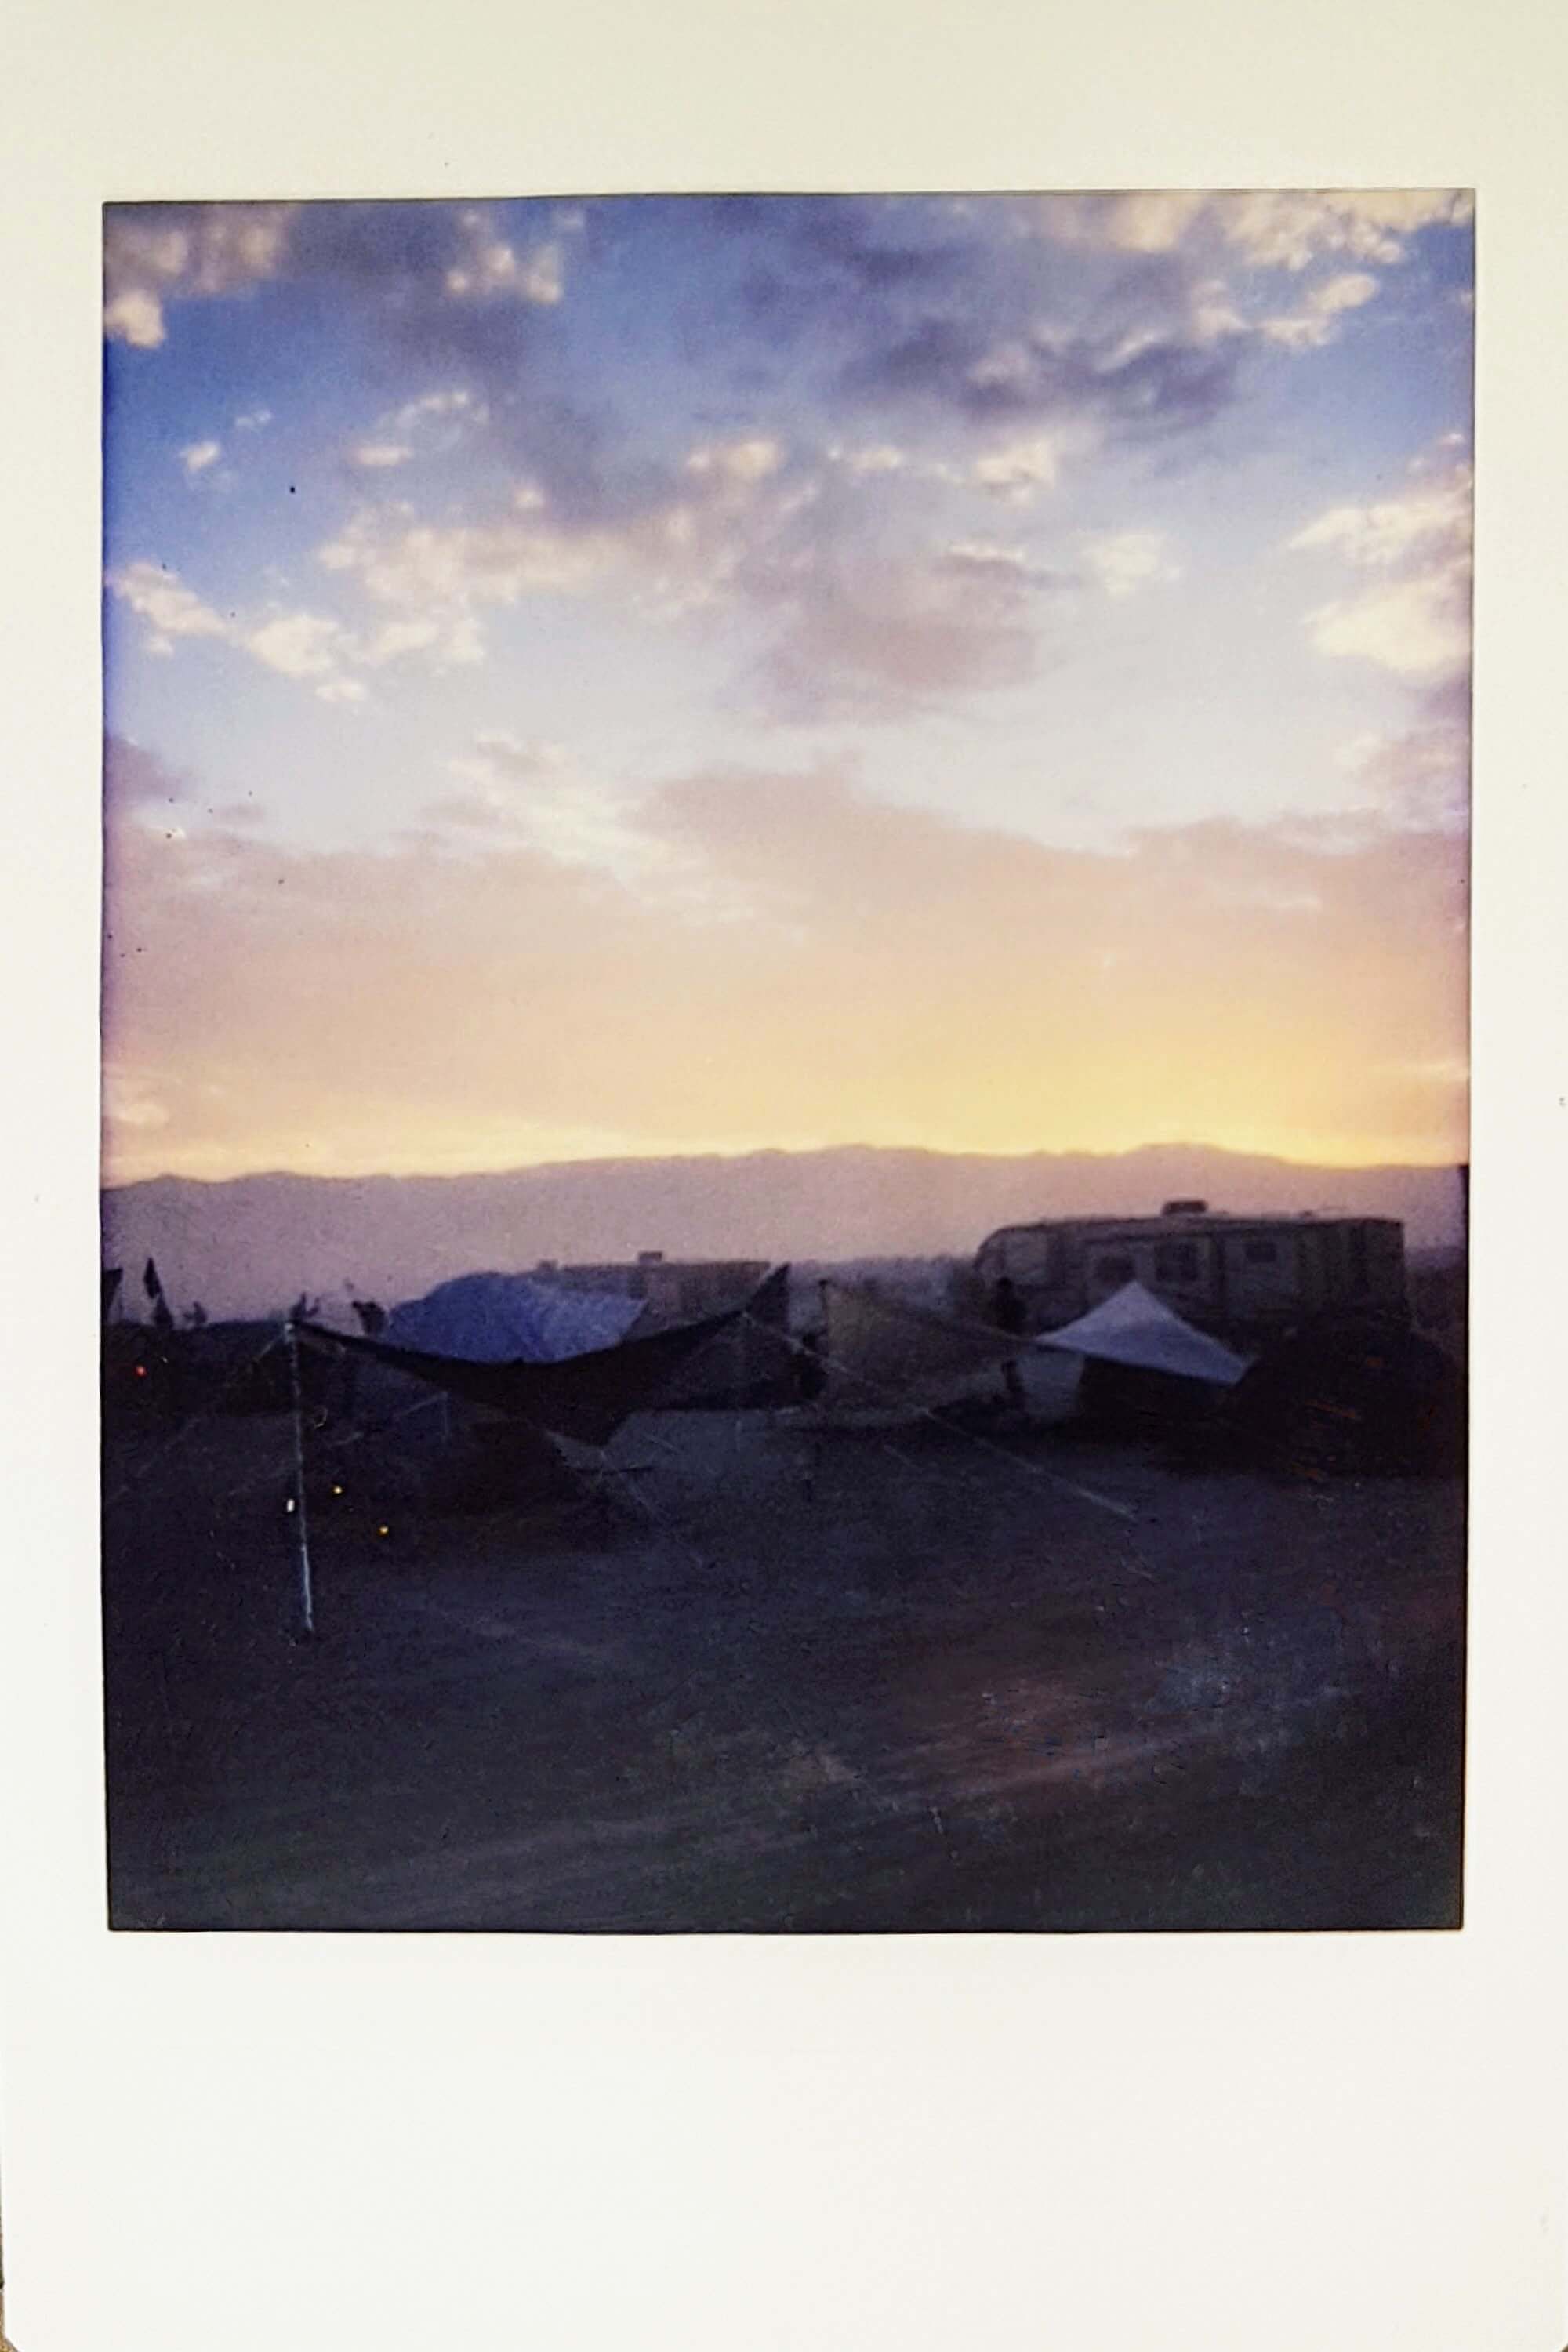 Sunset at Burning Man